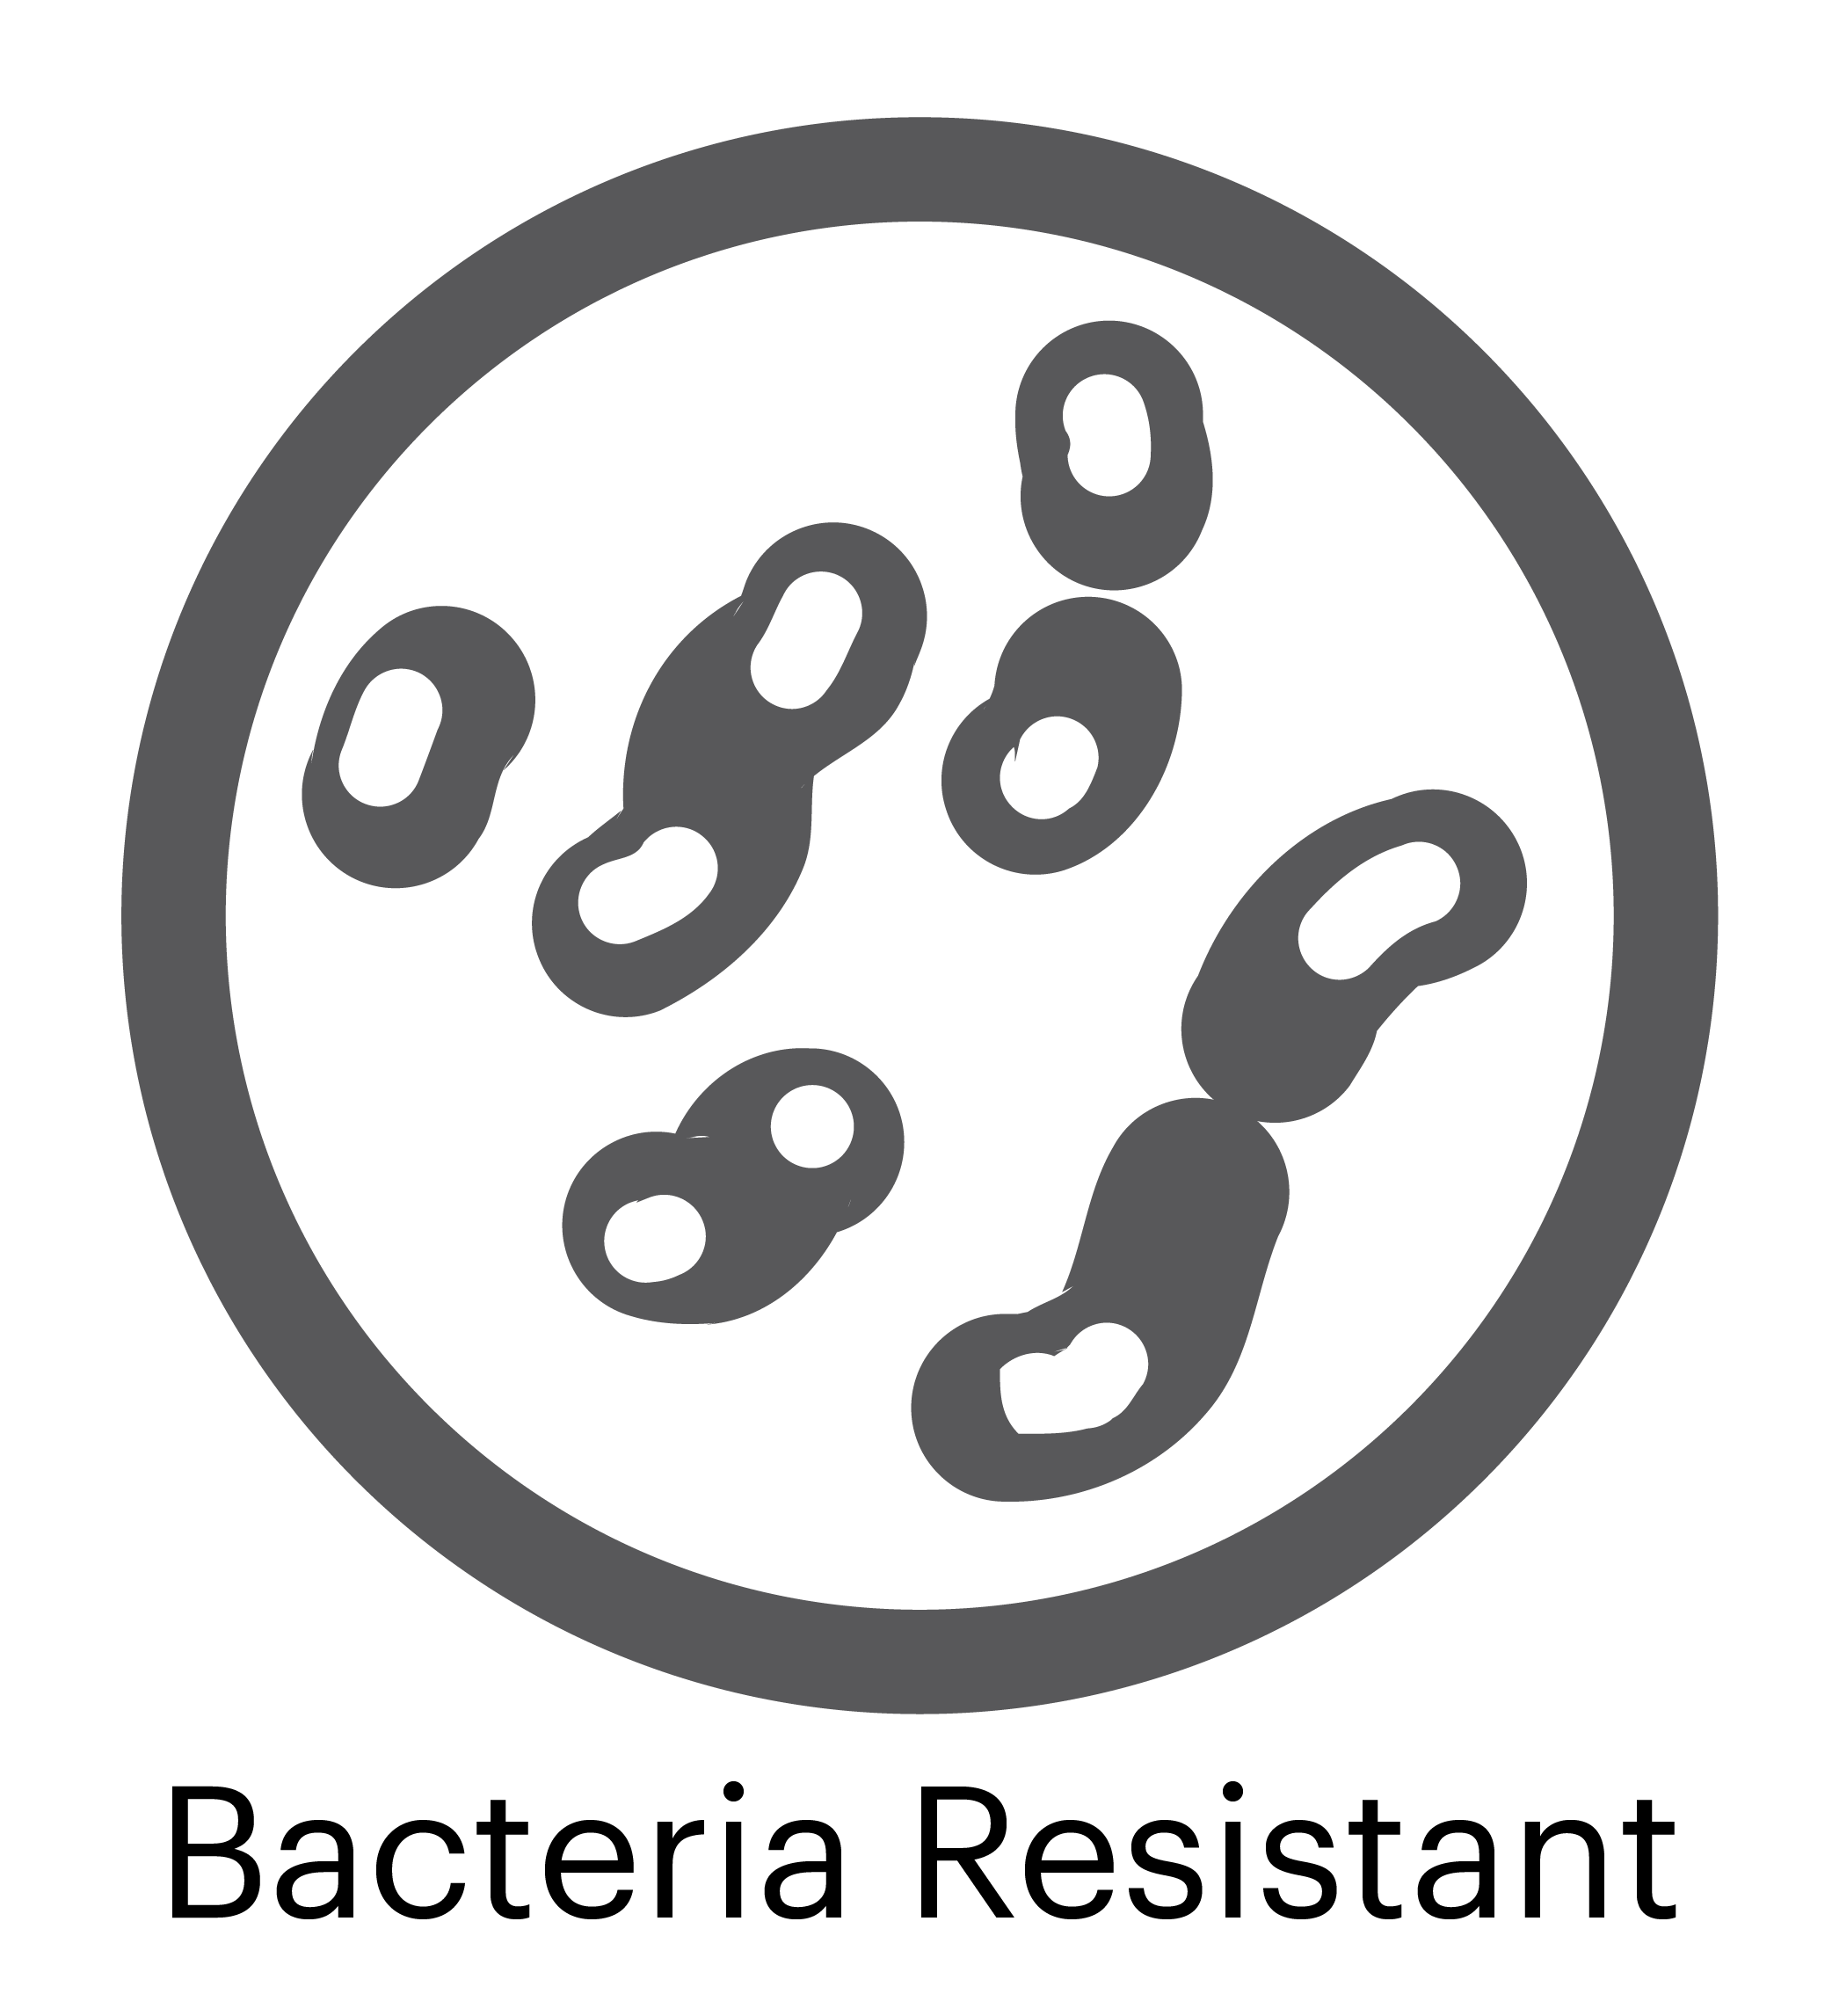 Bacteria Logo - Bacteria Logo | About of logos